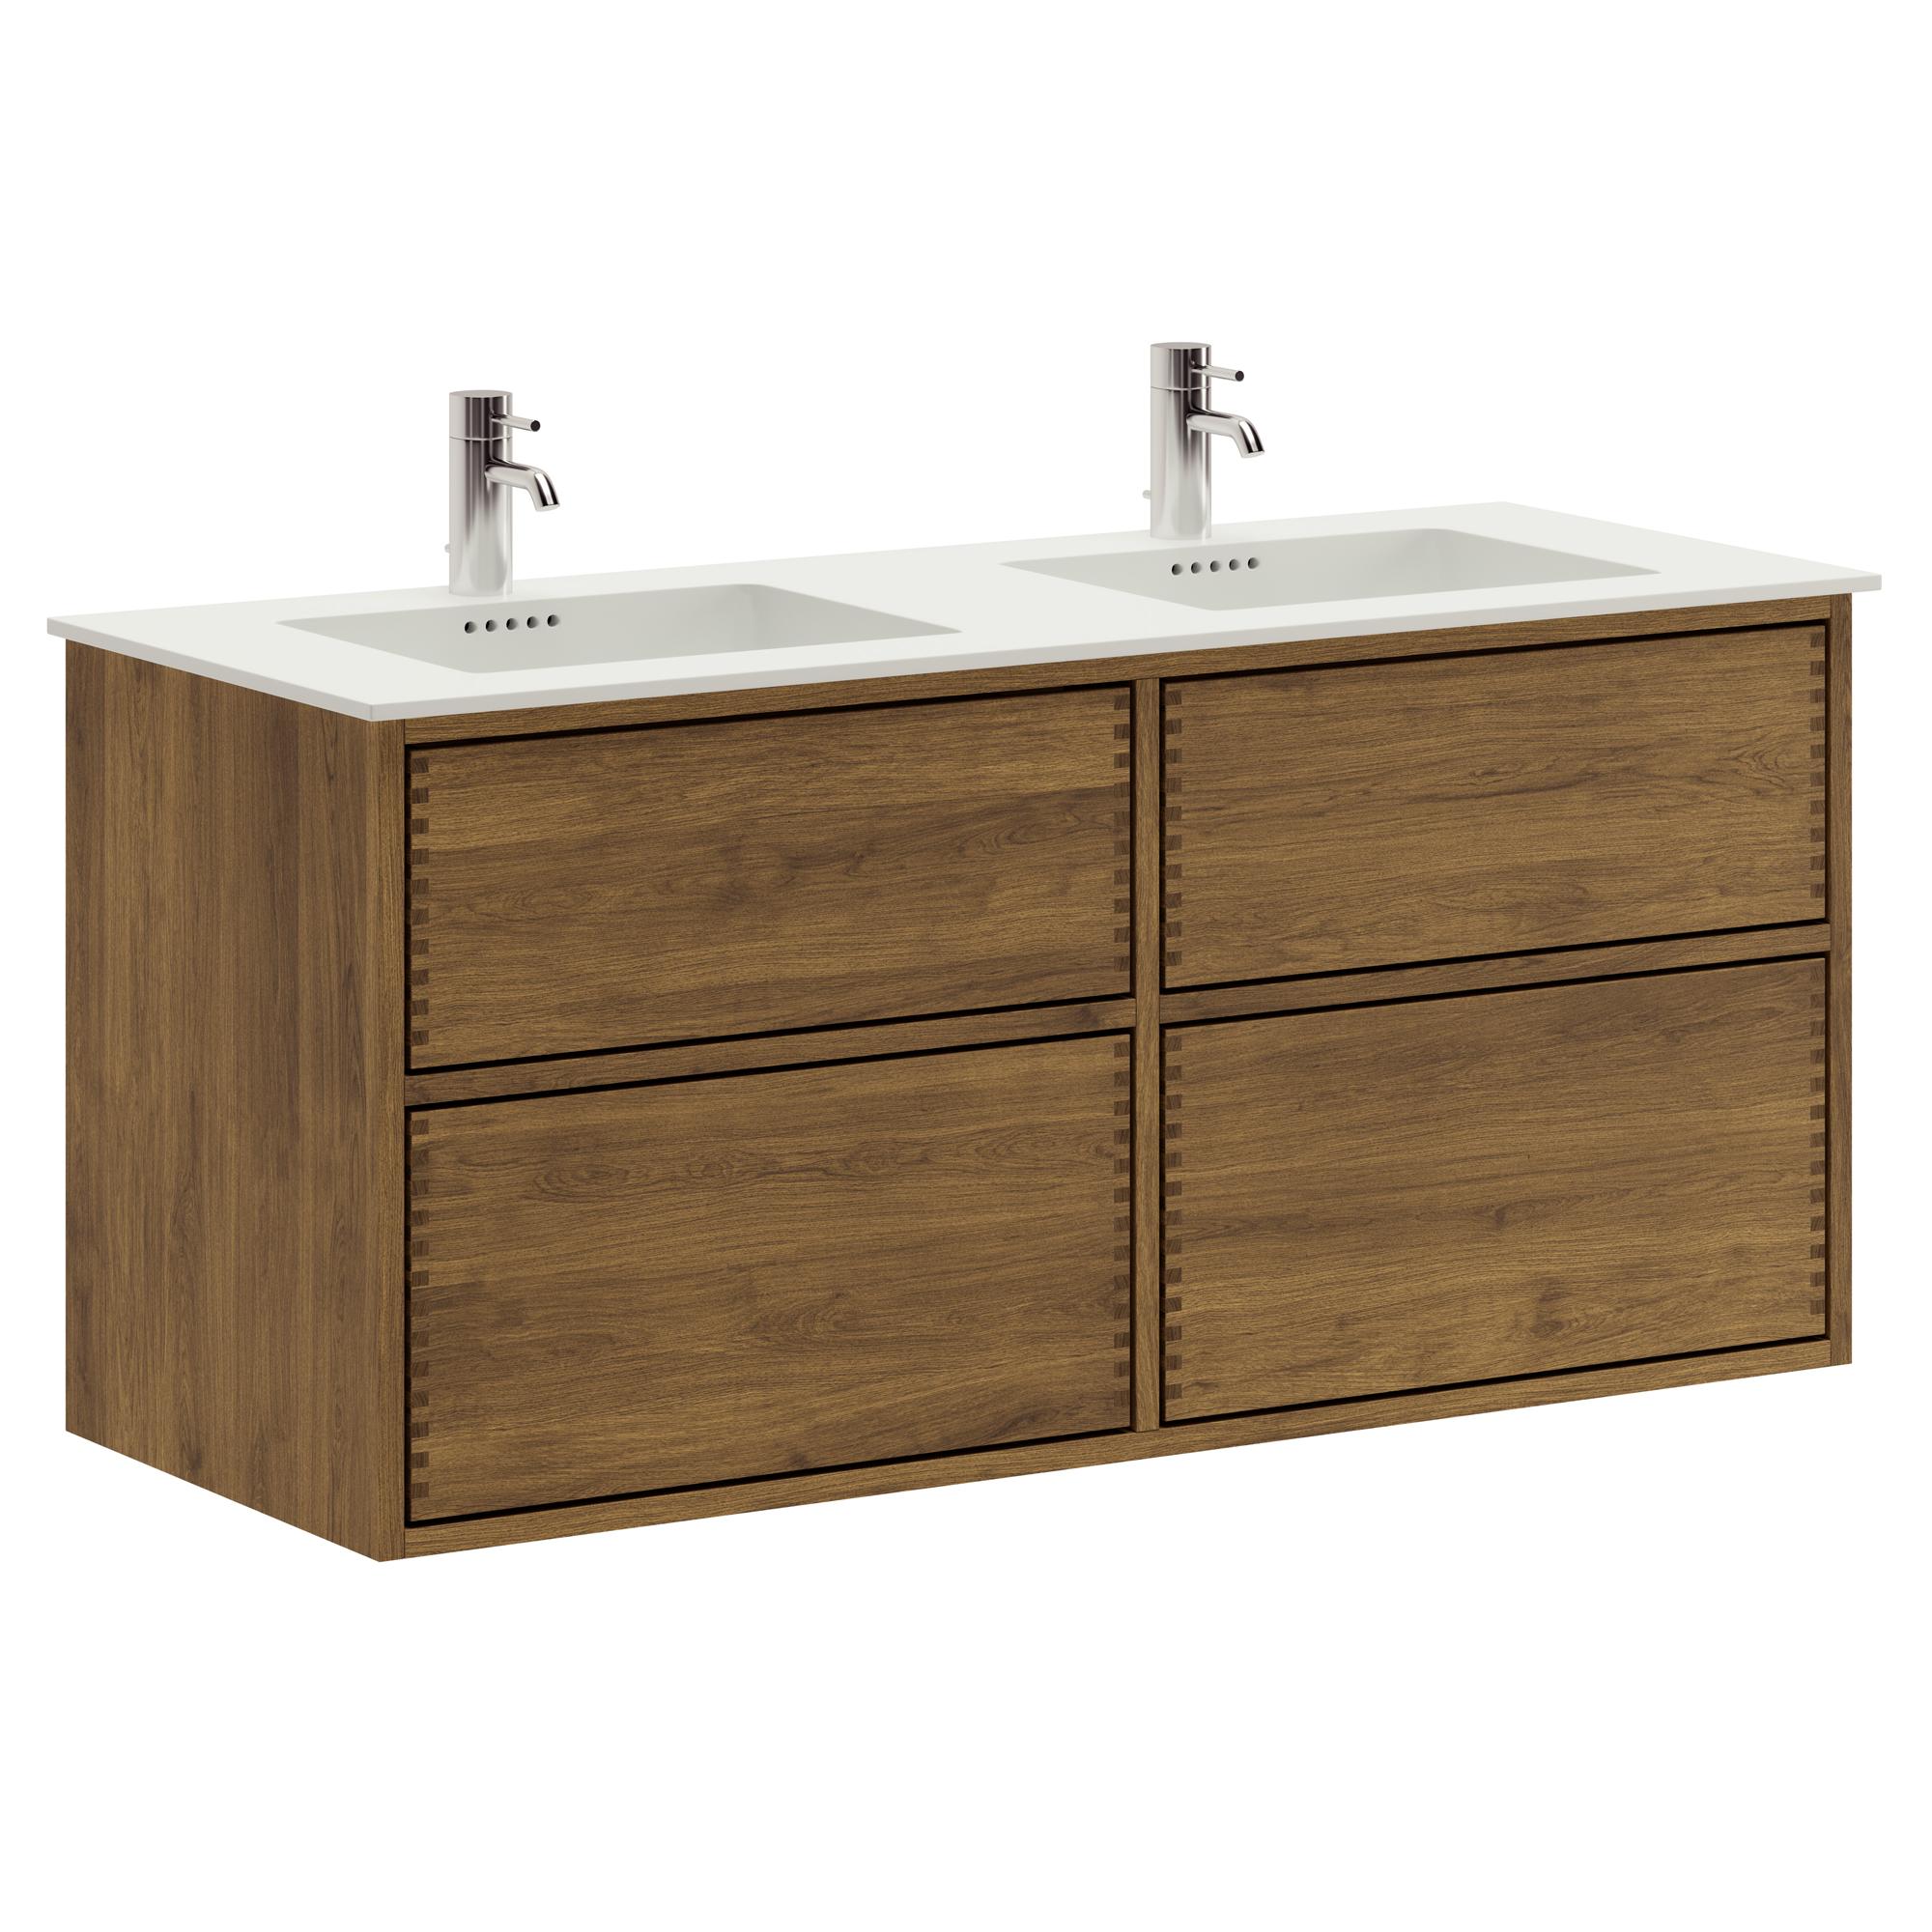 120 cm dunkel-geölter Just Wood Push-Badezimmermöbel mit 4 Schubladen und Solid Surface-Waschbecken - Doppelwaschbecken